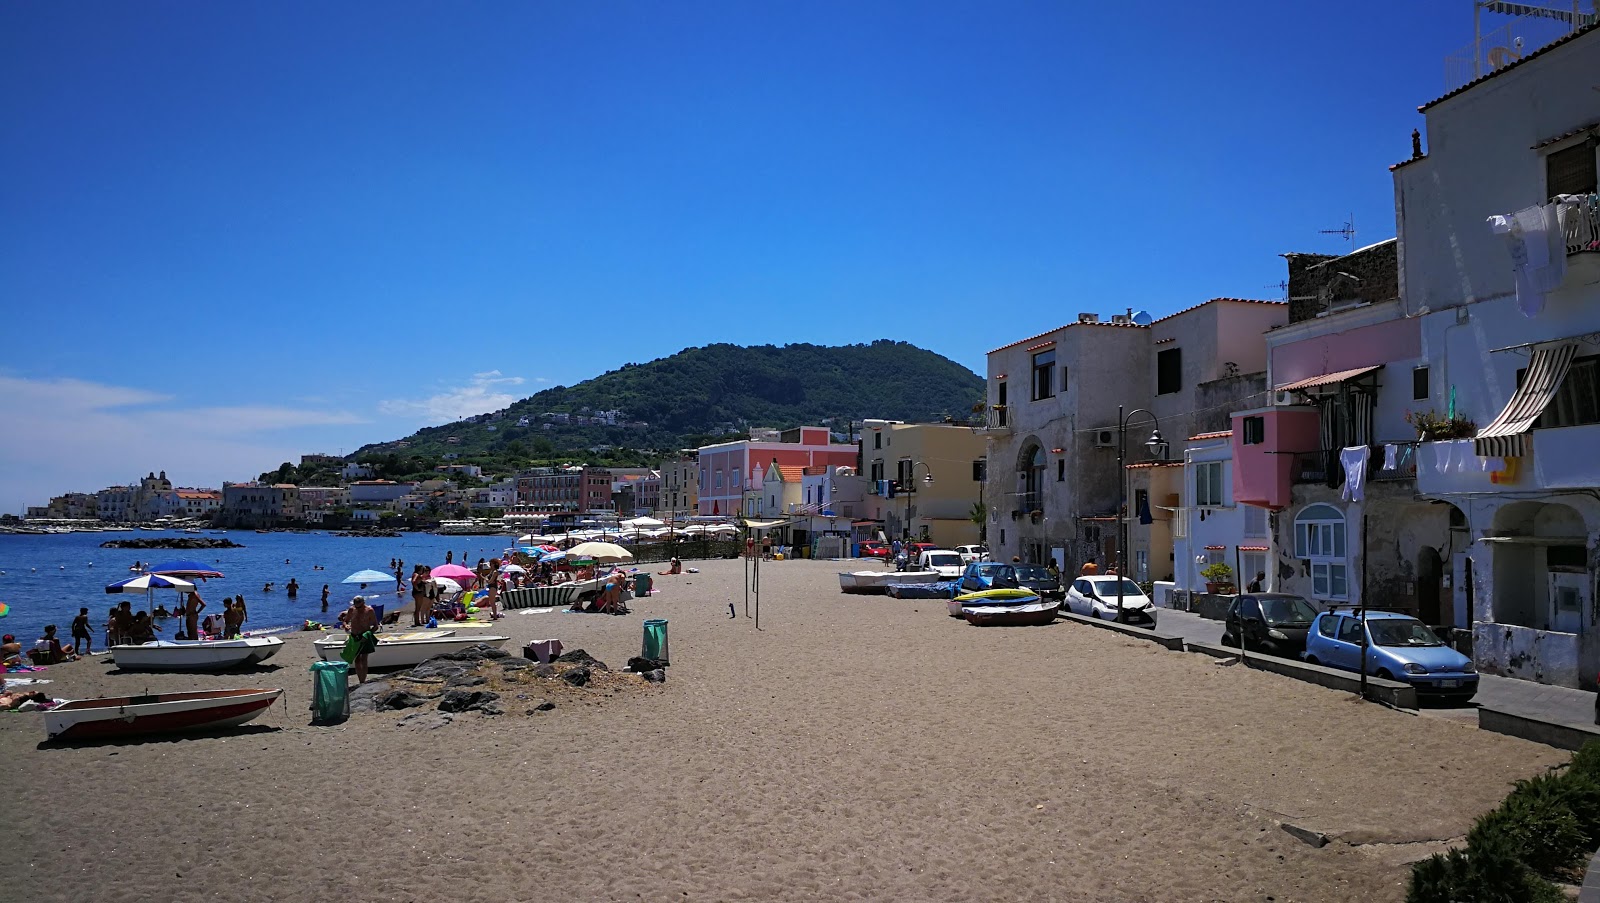 Foto av Spiaggia dei Pescatori med hög nivå av renlighet